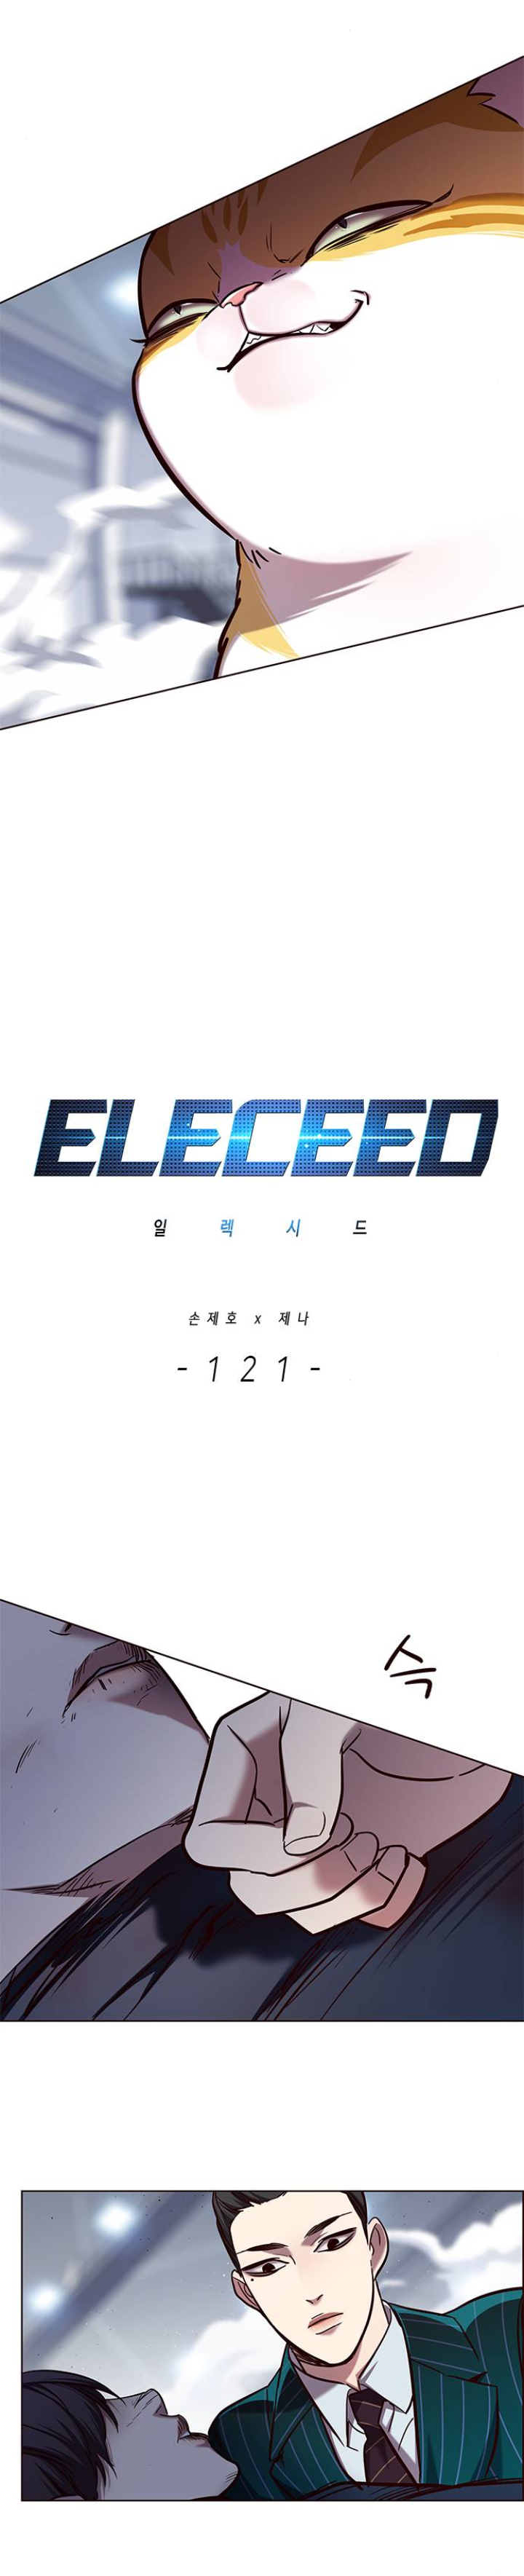 Eleceed04